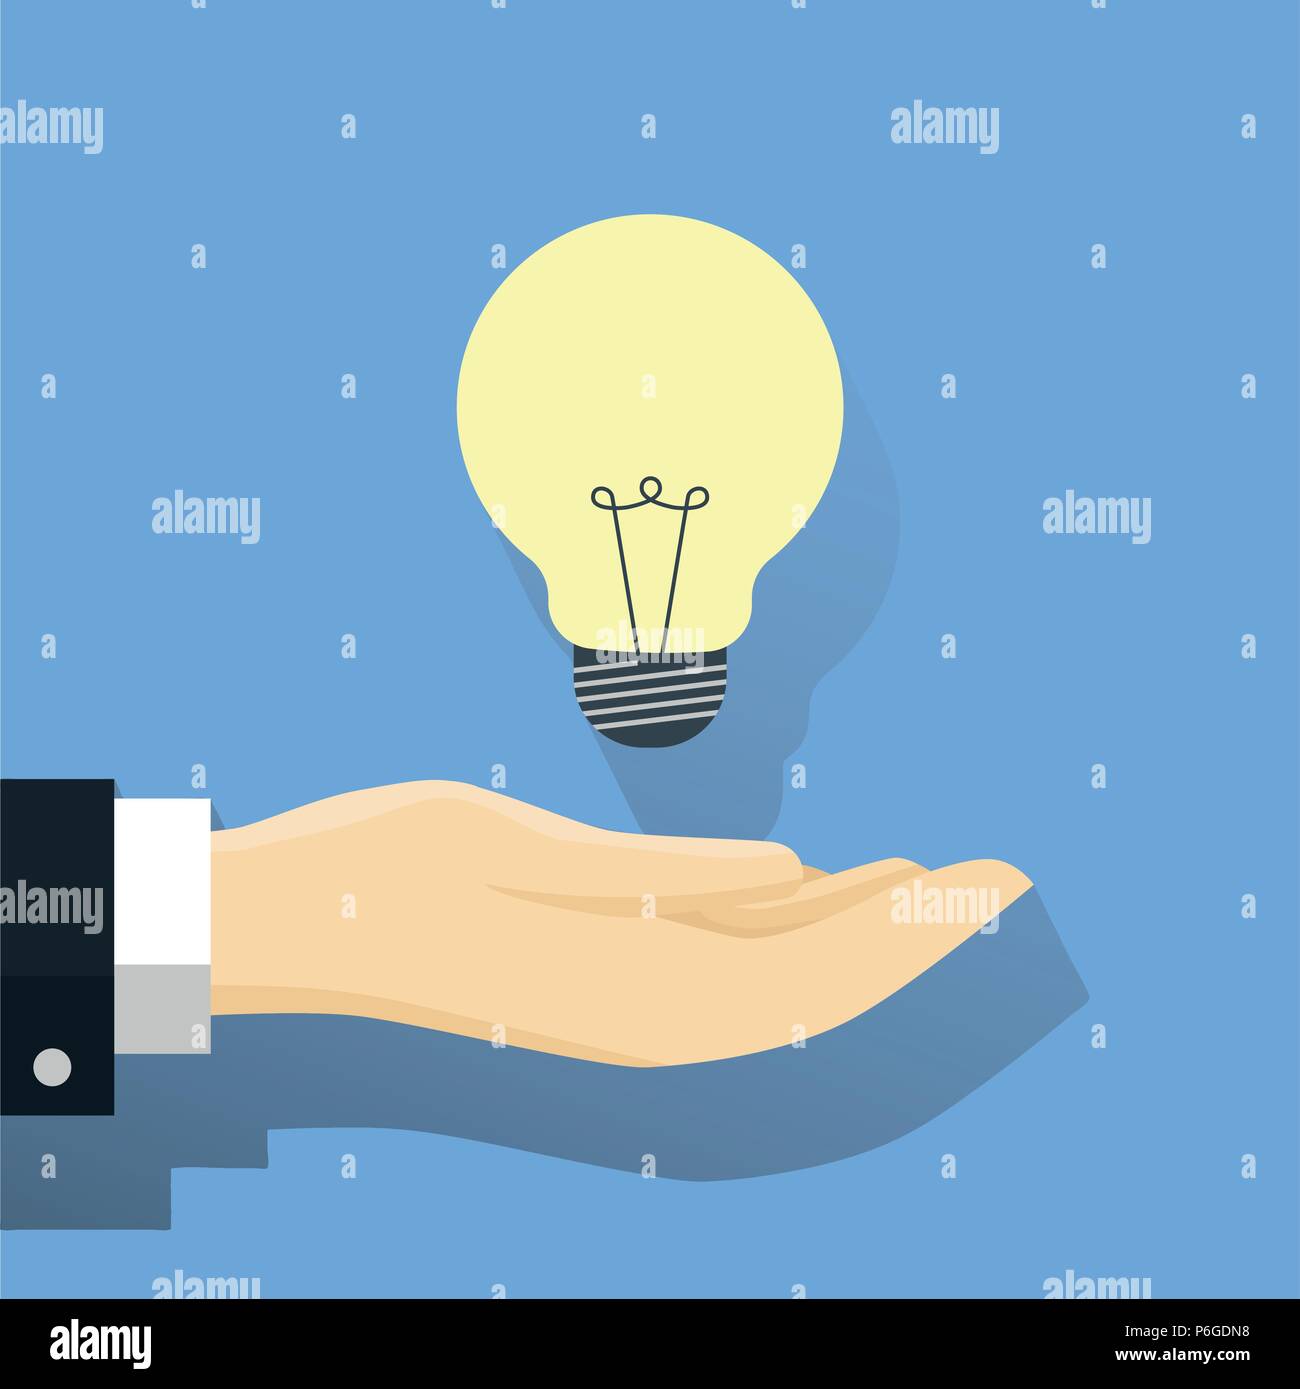 Imprenditore con lampadina, una mano e un'idea lampadina, idea moderna innovazione lampadina luce di concetto. Web concettuale illustrazione - Vettore piana Illus Illustrazione Vettoriale